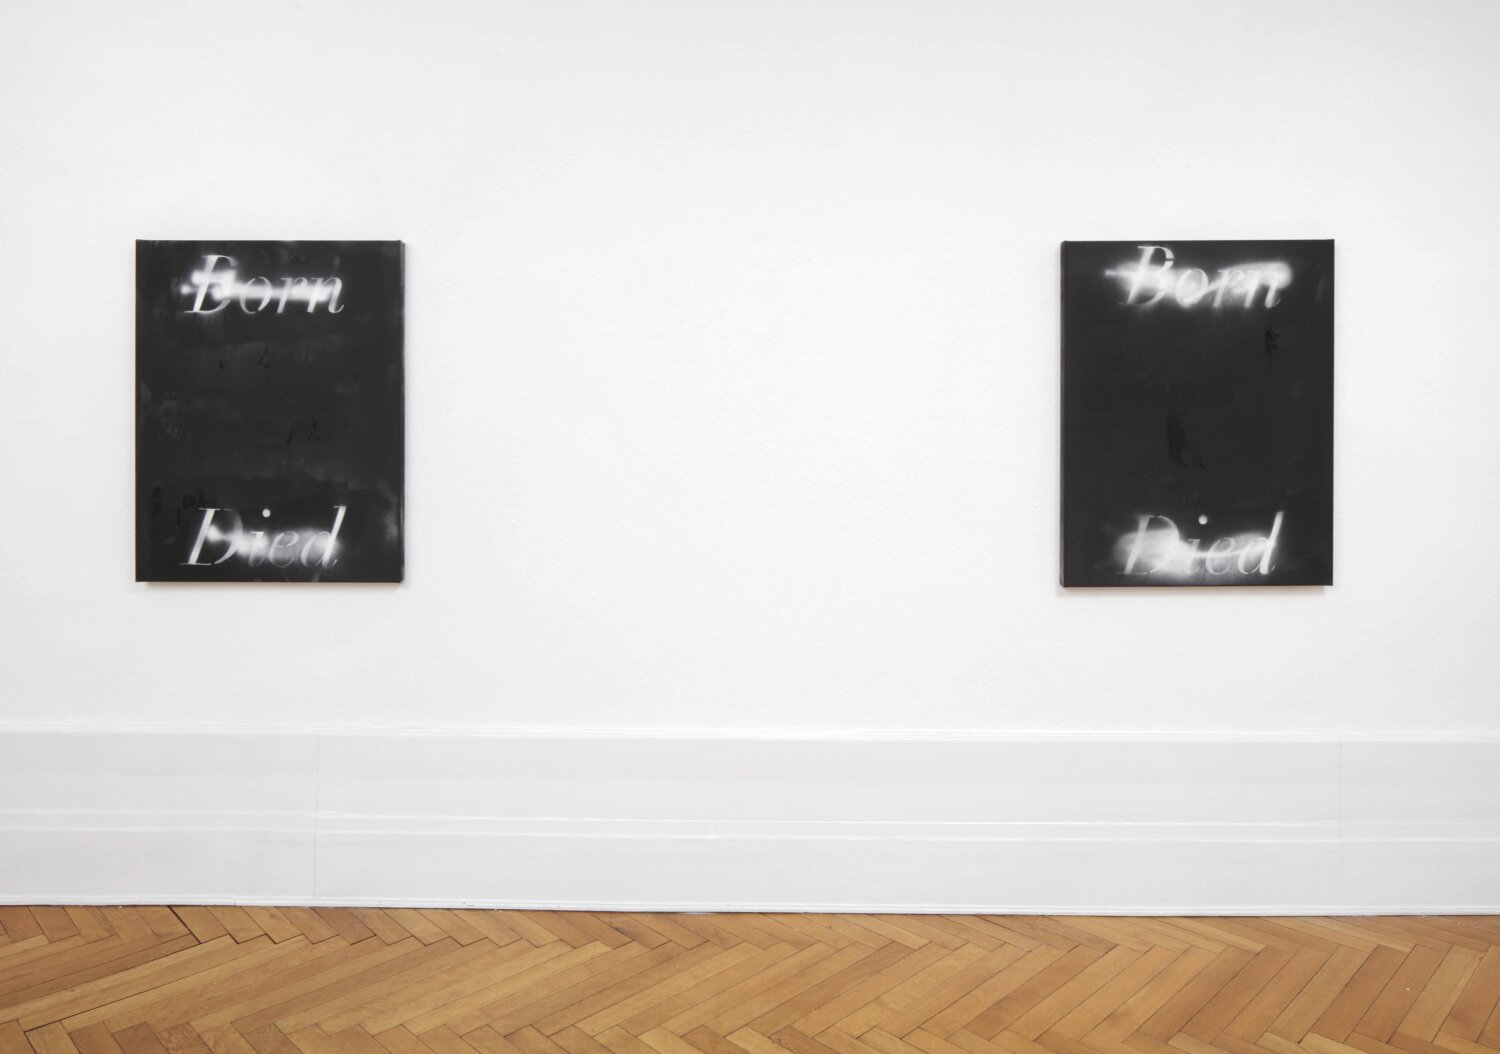 Zwei schwarze Gemälde von Richie Culver hängen nebeneinander. Sie haben die weiße Aufschrift "Born Died".